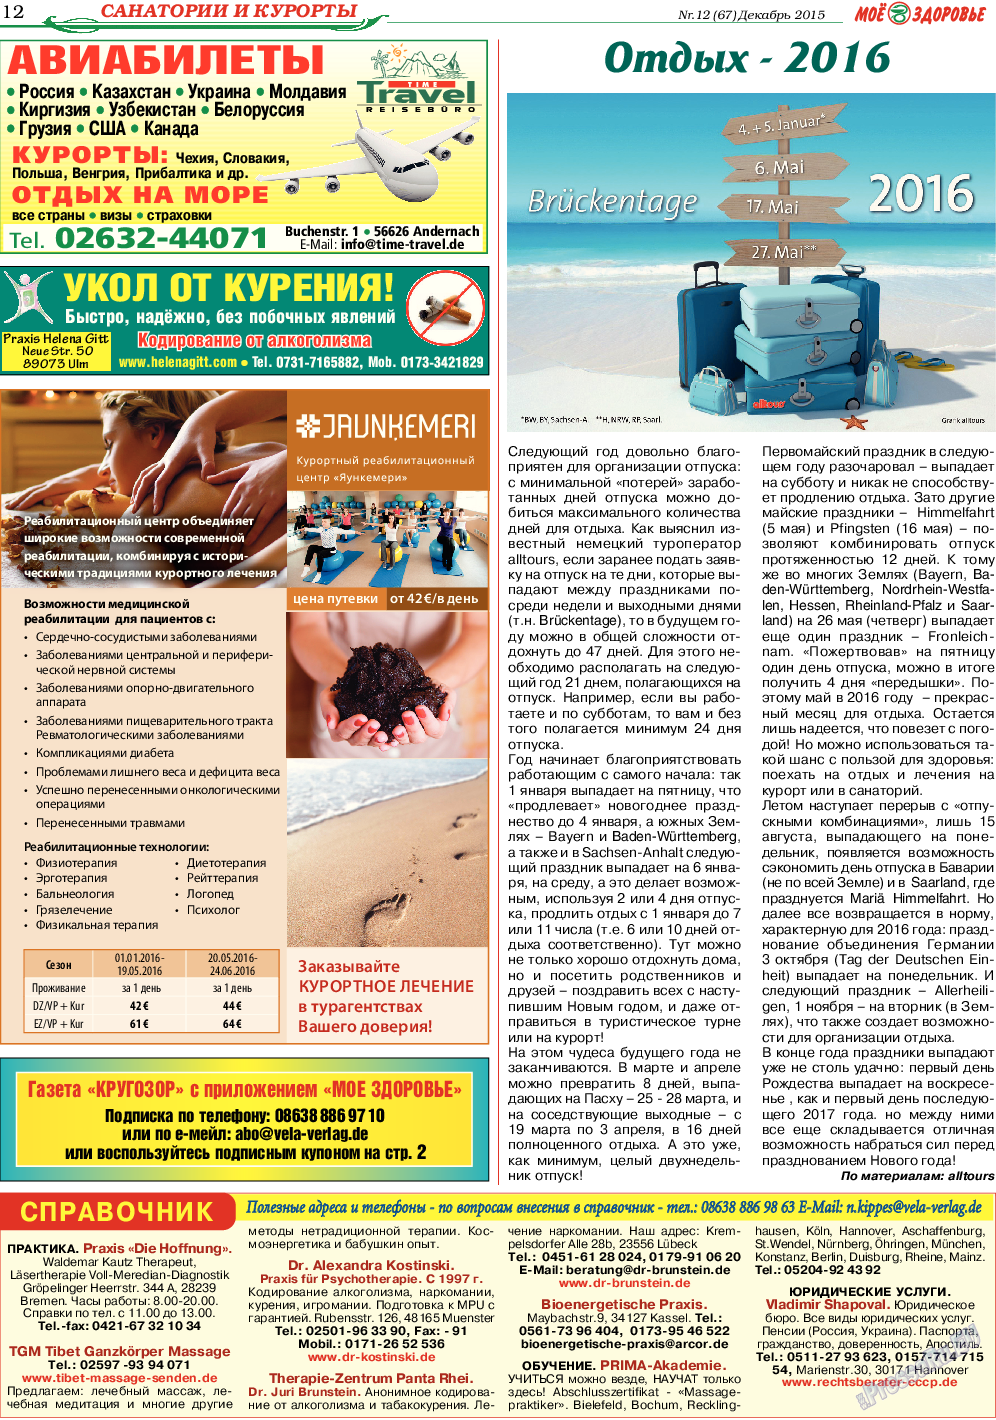 Кругозор (газета). 2015 год, номер 12, стр. 12